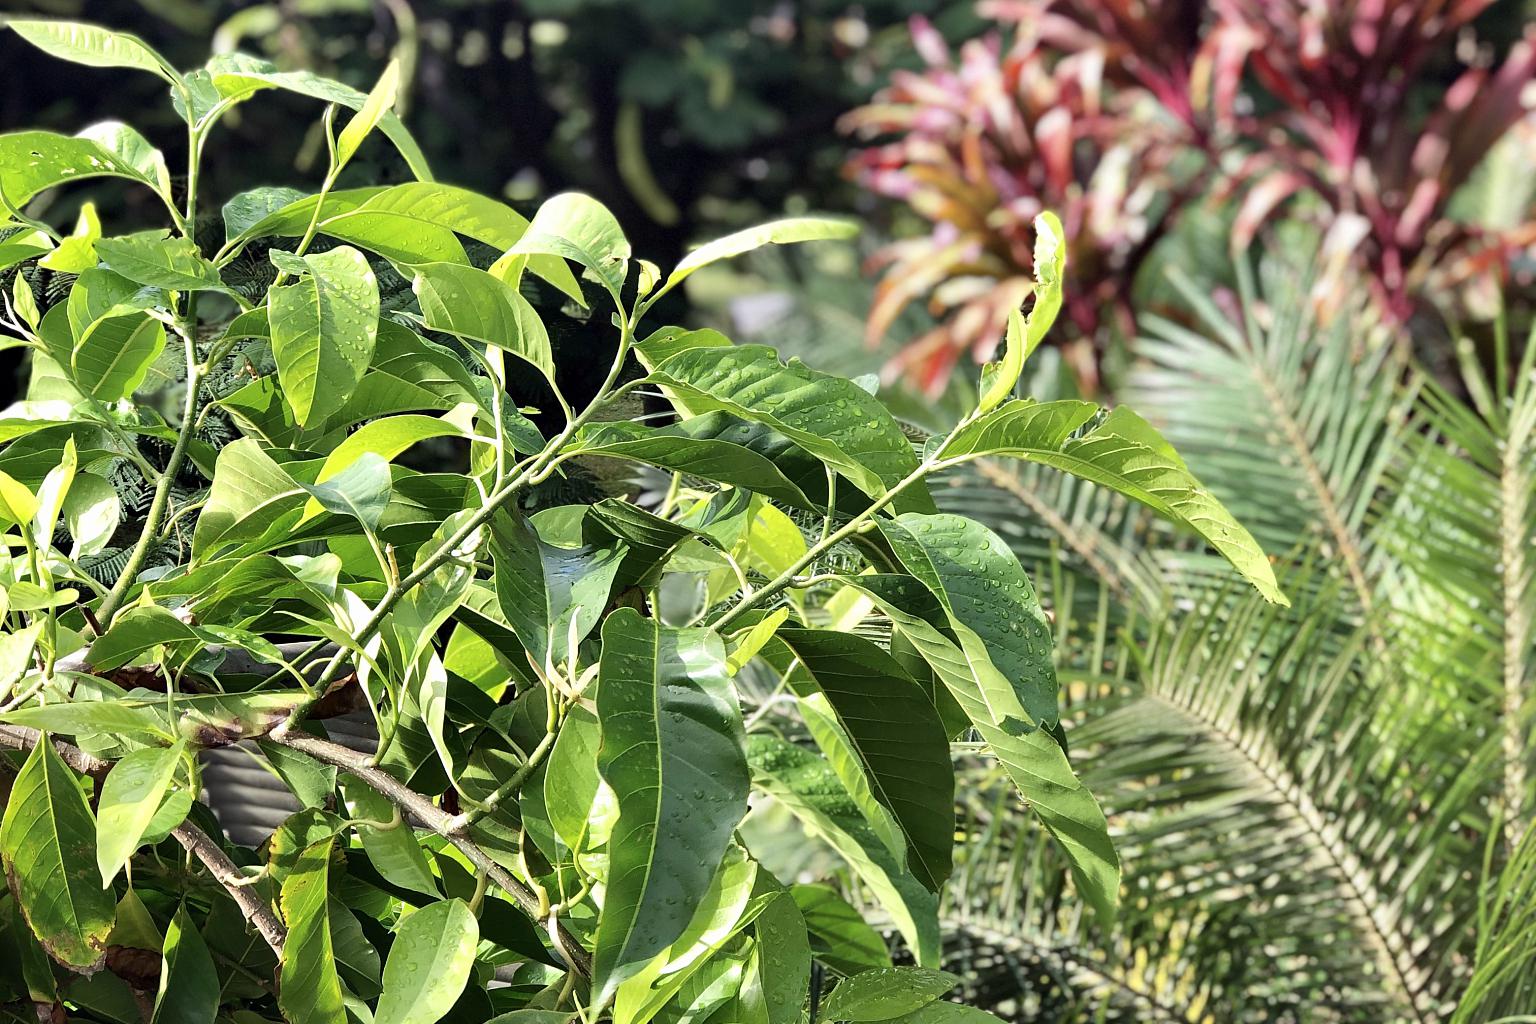 香椿移栽:智慧选择与正确操作 香椿树作为一种常见的植物,移栽时确保